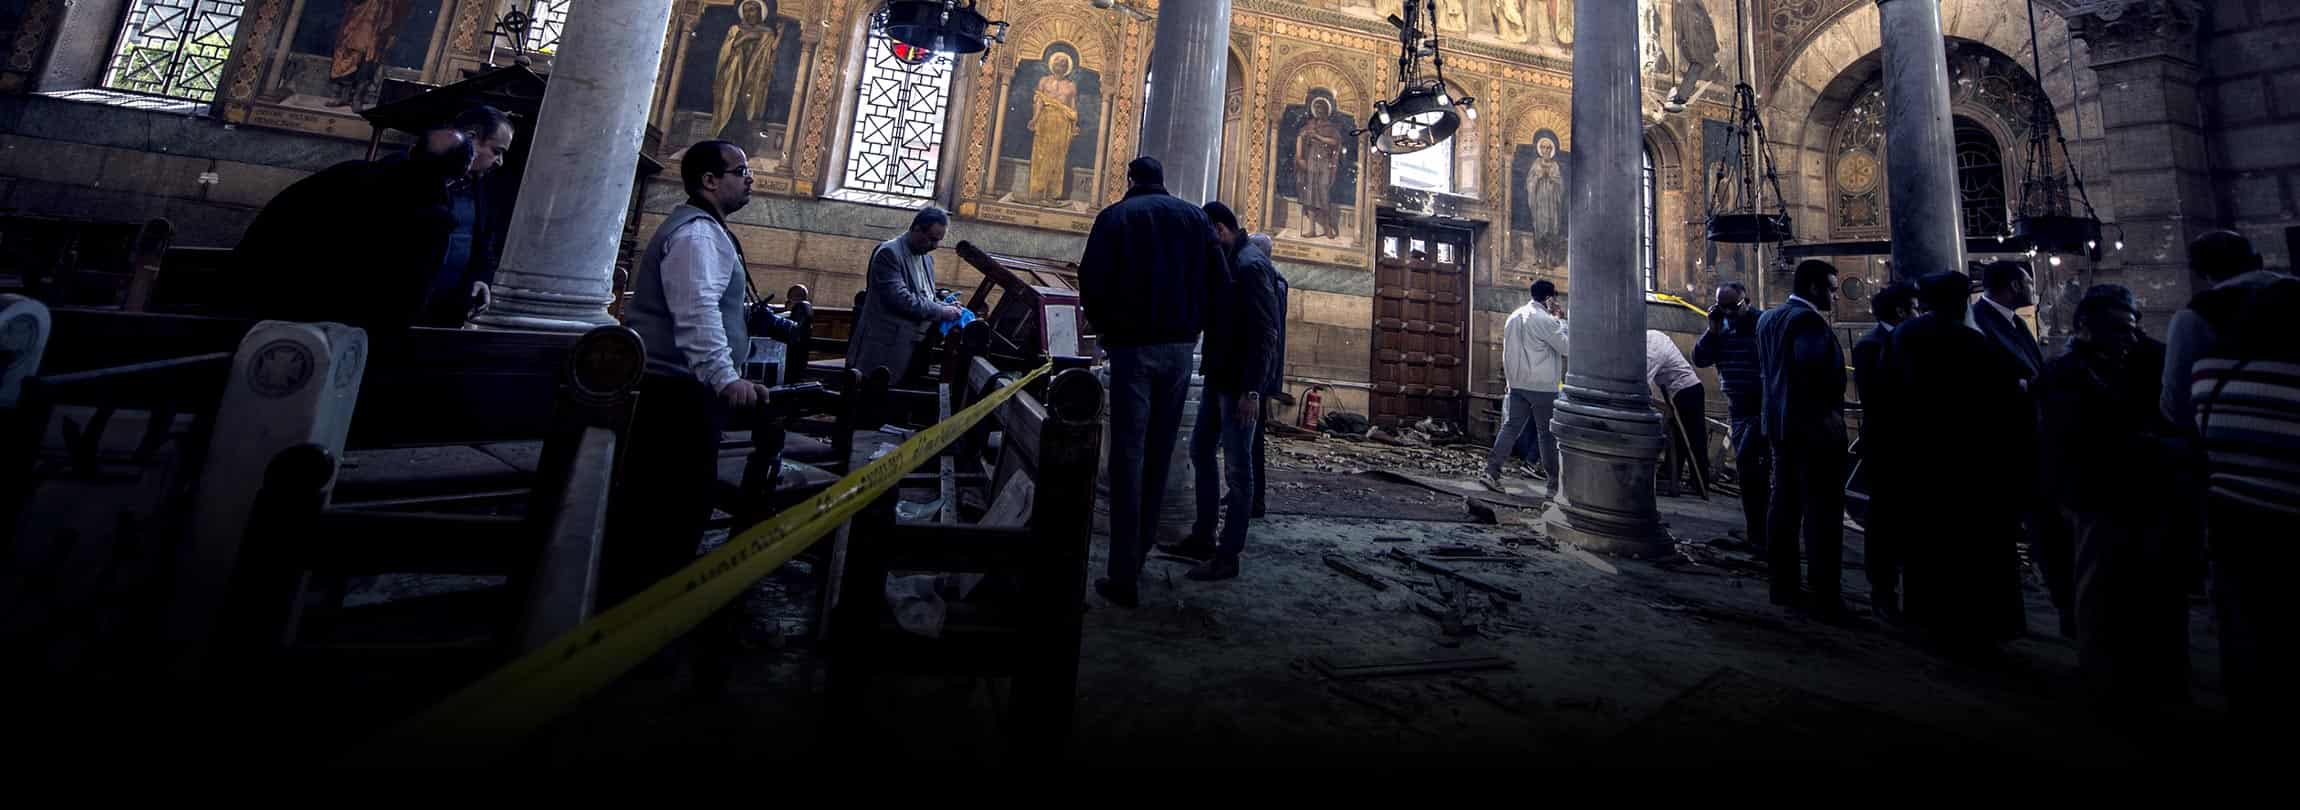 O drama da Igreja no Egito e o silêncio dos meios de comunicação 